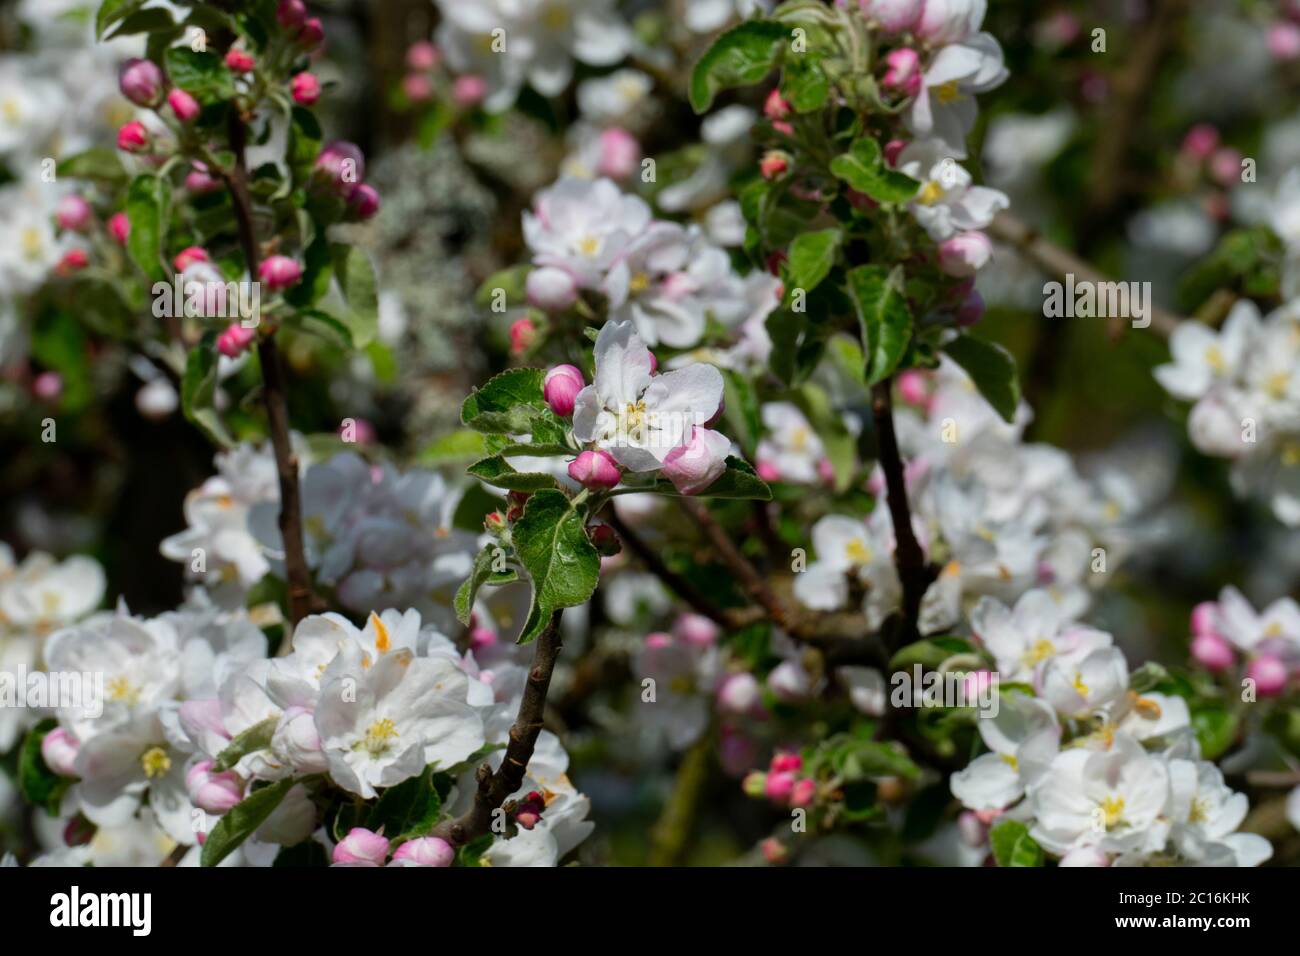 Apelblüte in weiß, pink mit unscharfem Hintergrund Stock Photo